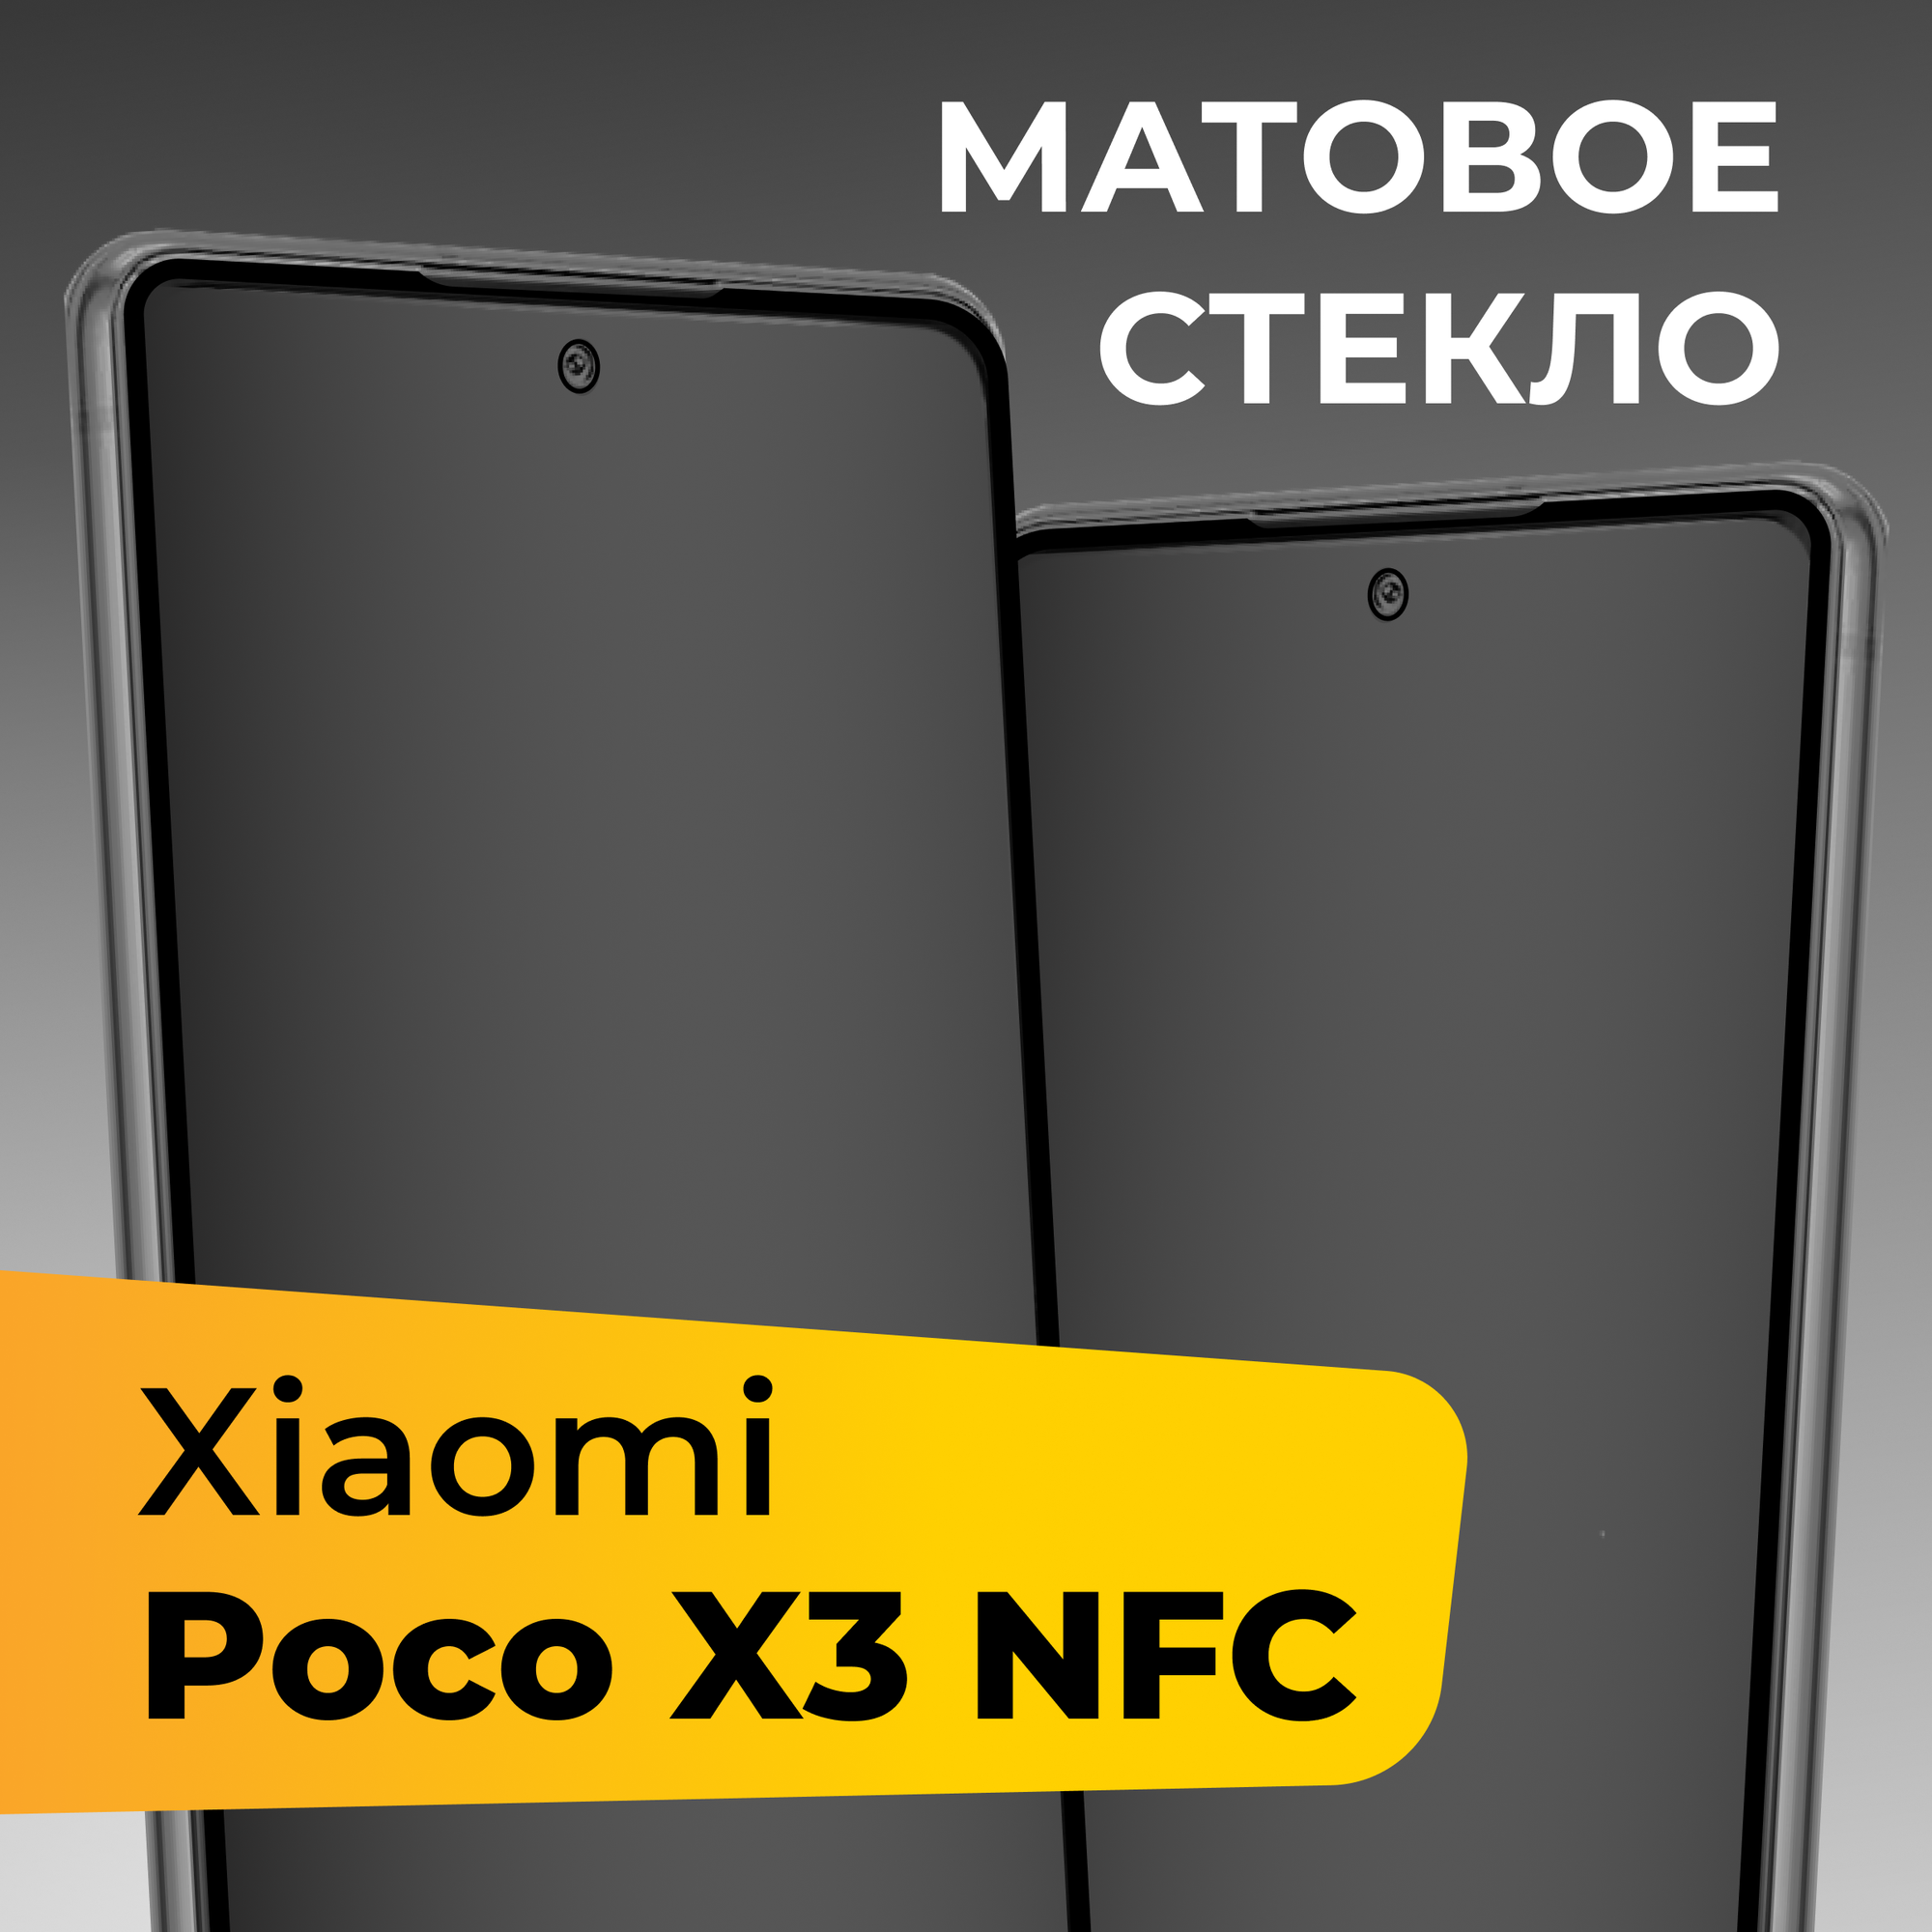 Матовое защитное стекло для телефона Xiaomi Poco X3 NFC / Противоударное закаленное стекло на весь экран для смартфона Сяоми Поко Х3 НФС